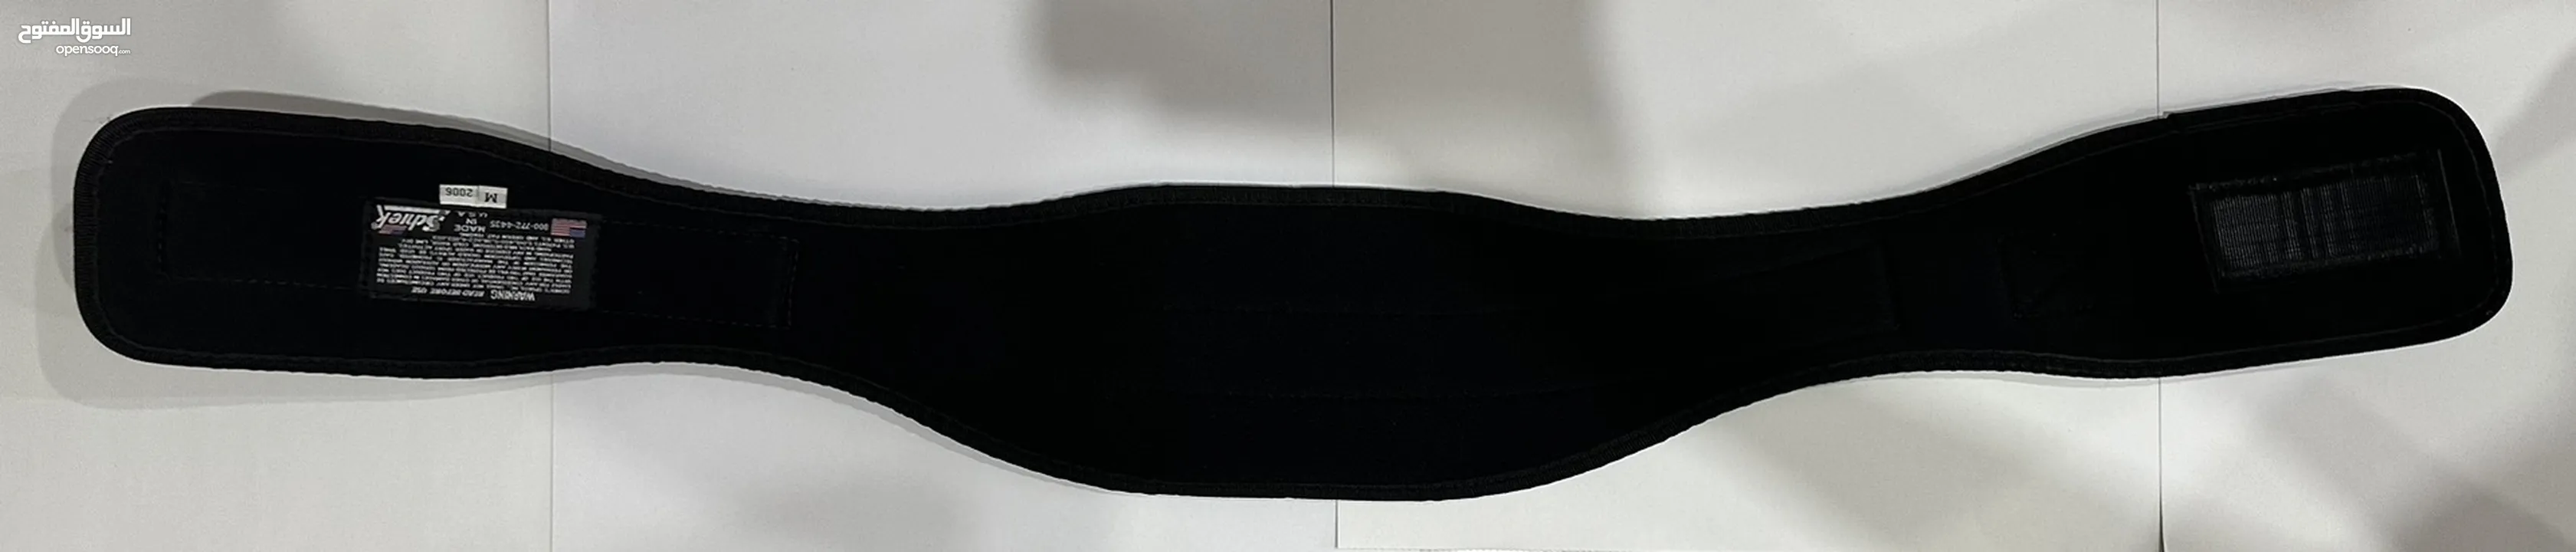 حزام ظهر لرفع الأثقال(شيك بيلت 2006 M) SCHIEK, BELT 2006 BLACK, MEDIUM SIZE